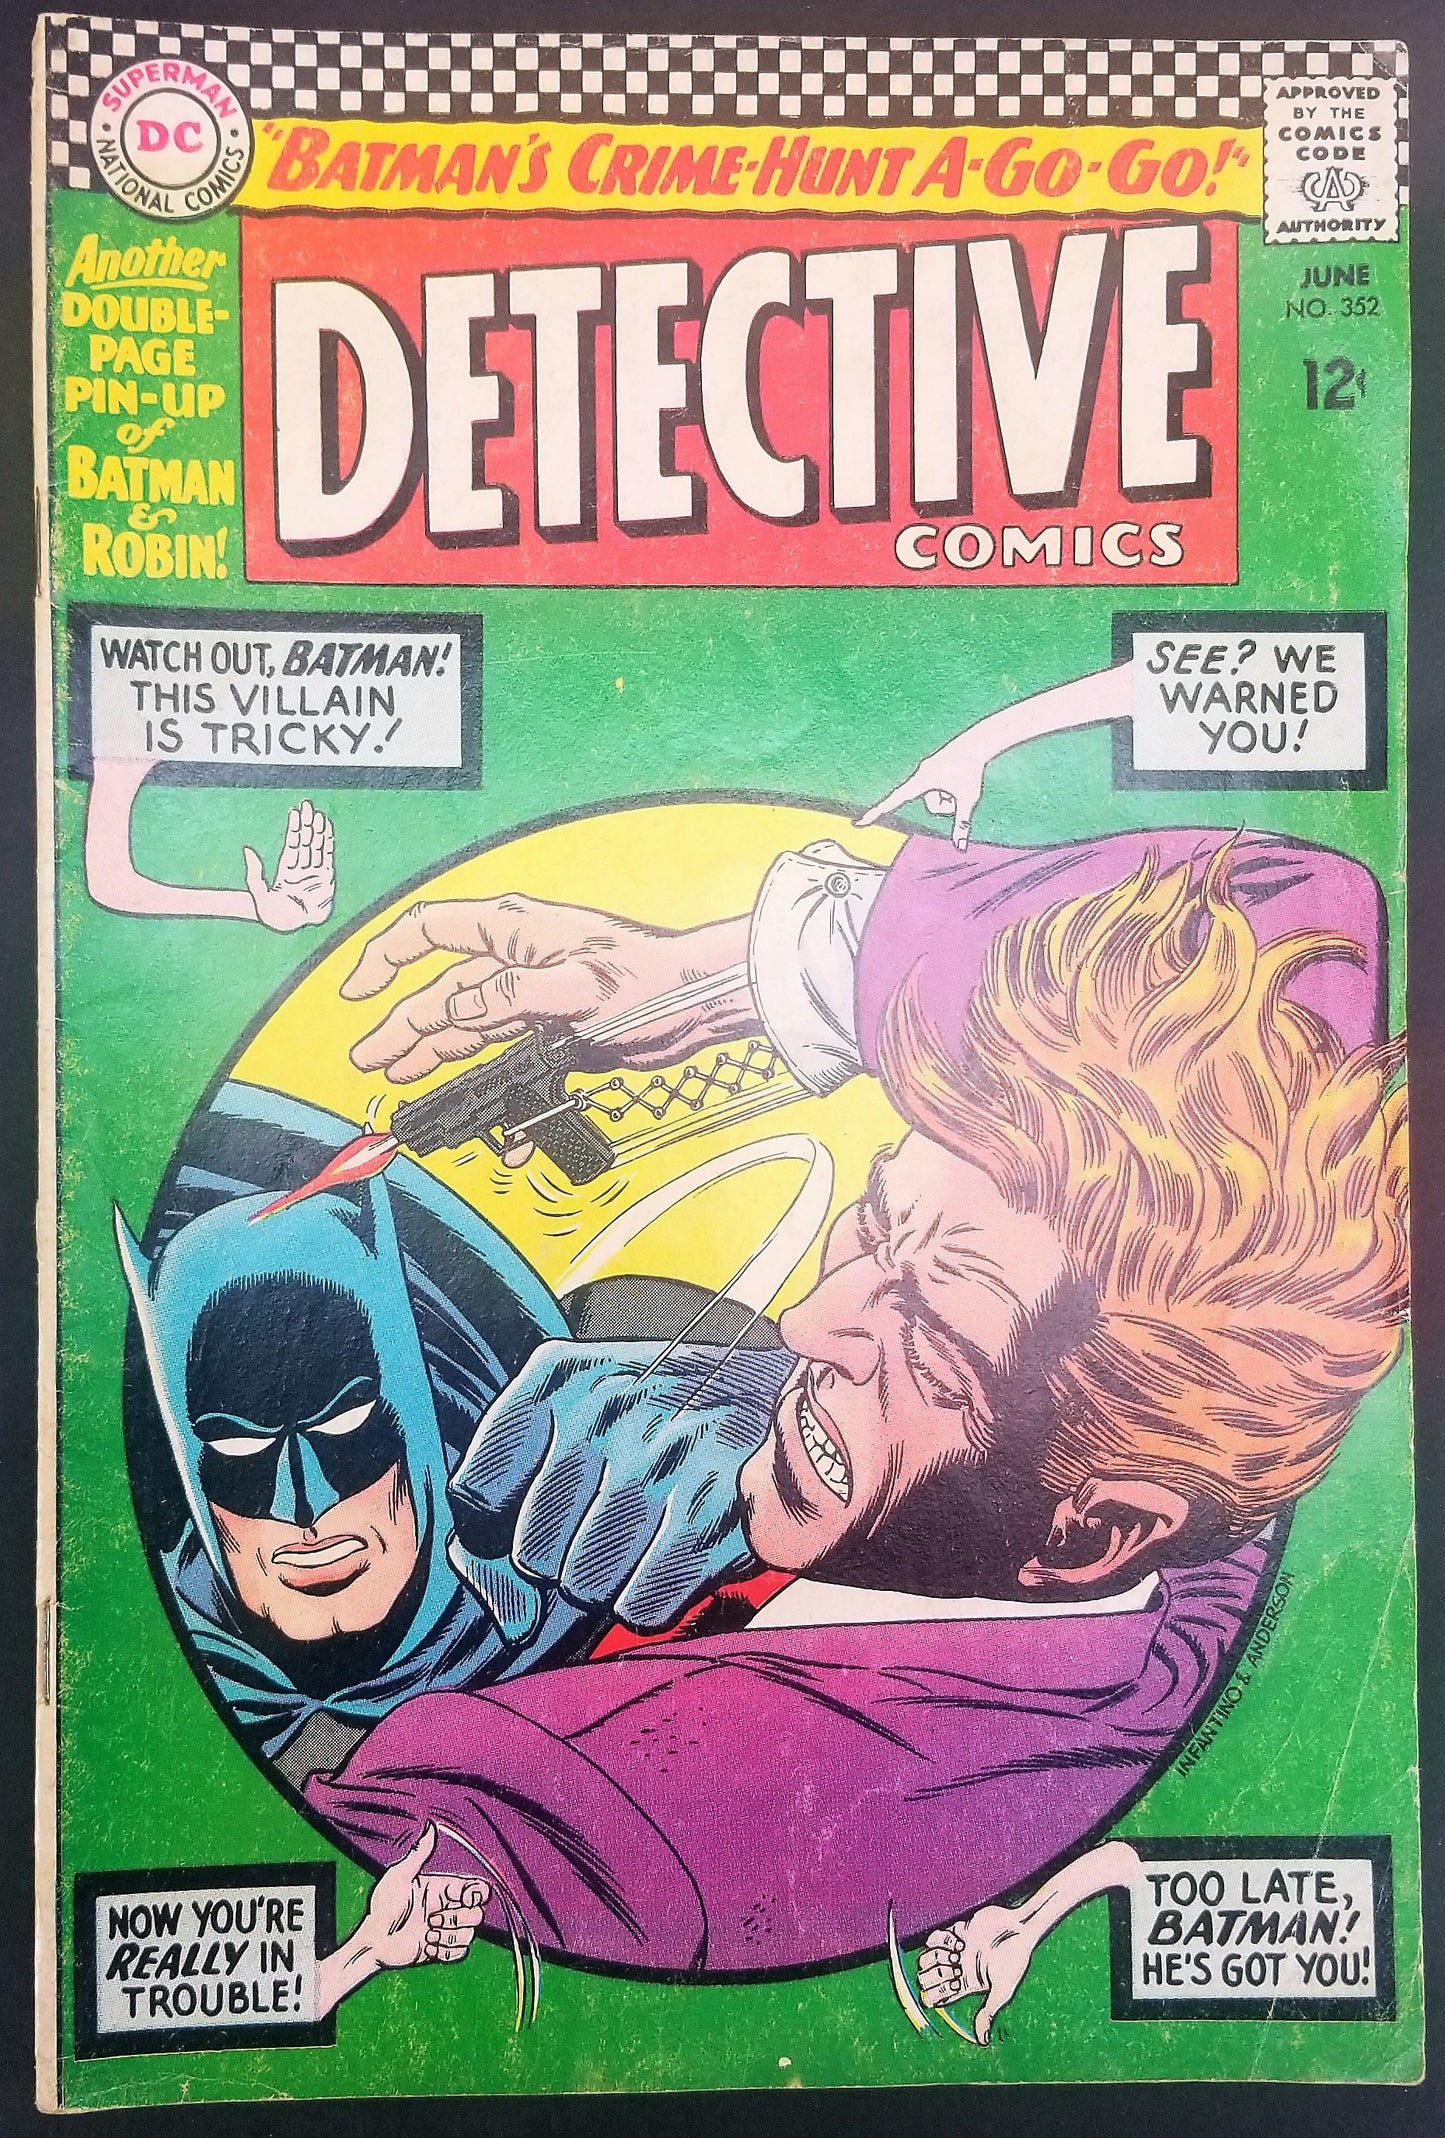 Detective Comics No. 352, Starring Batman, DC Comics, June 1966